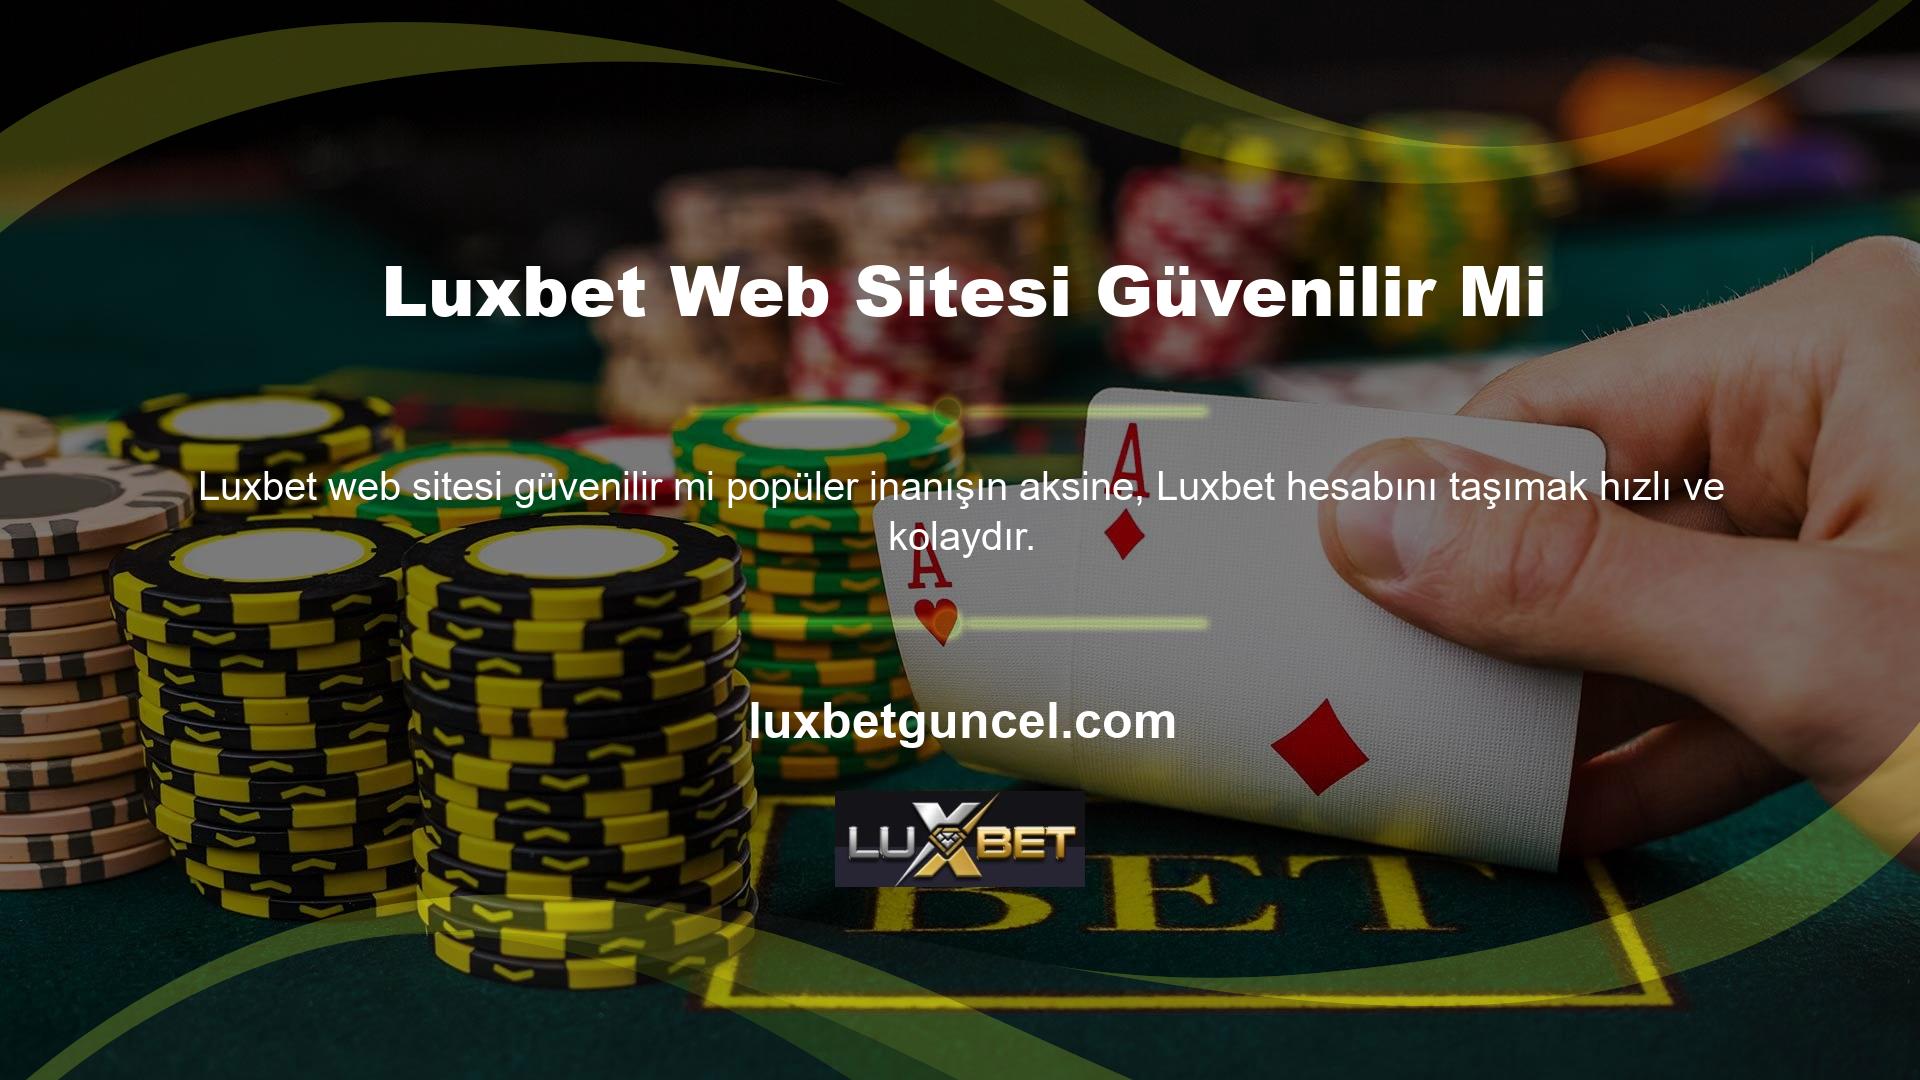 İnternet üzerinden Luxbet oynamak için üye kaydı oluşturan Luxbet çevrimiçi bahisçilerinin, belirli limitlere ulaştıktan sonra üye hesaplarına para aktarmaları gerekmektedir